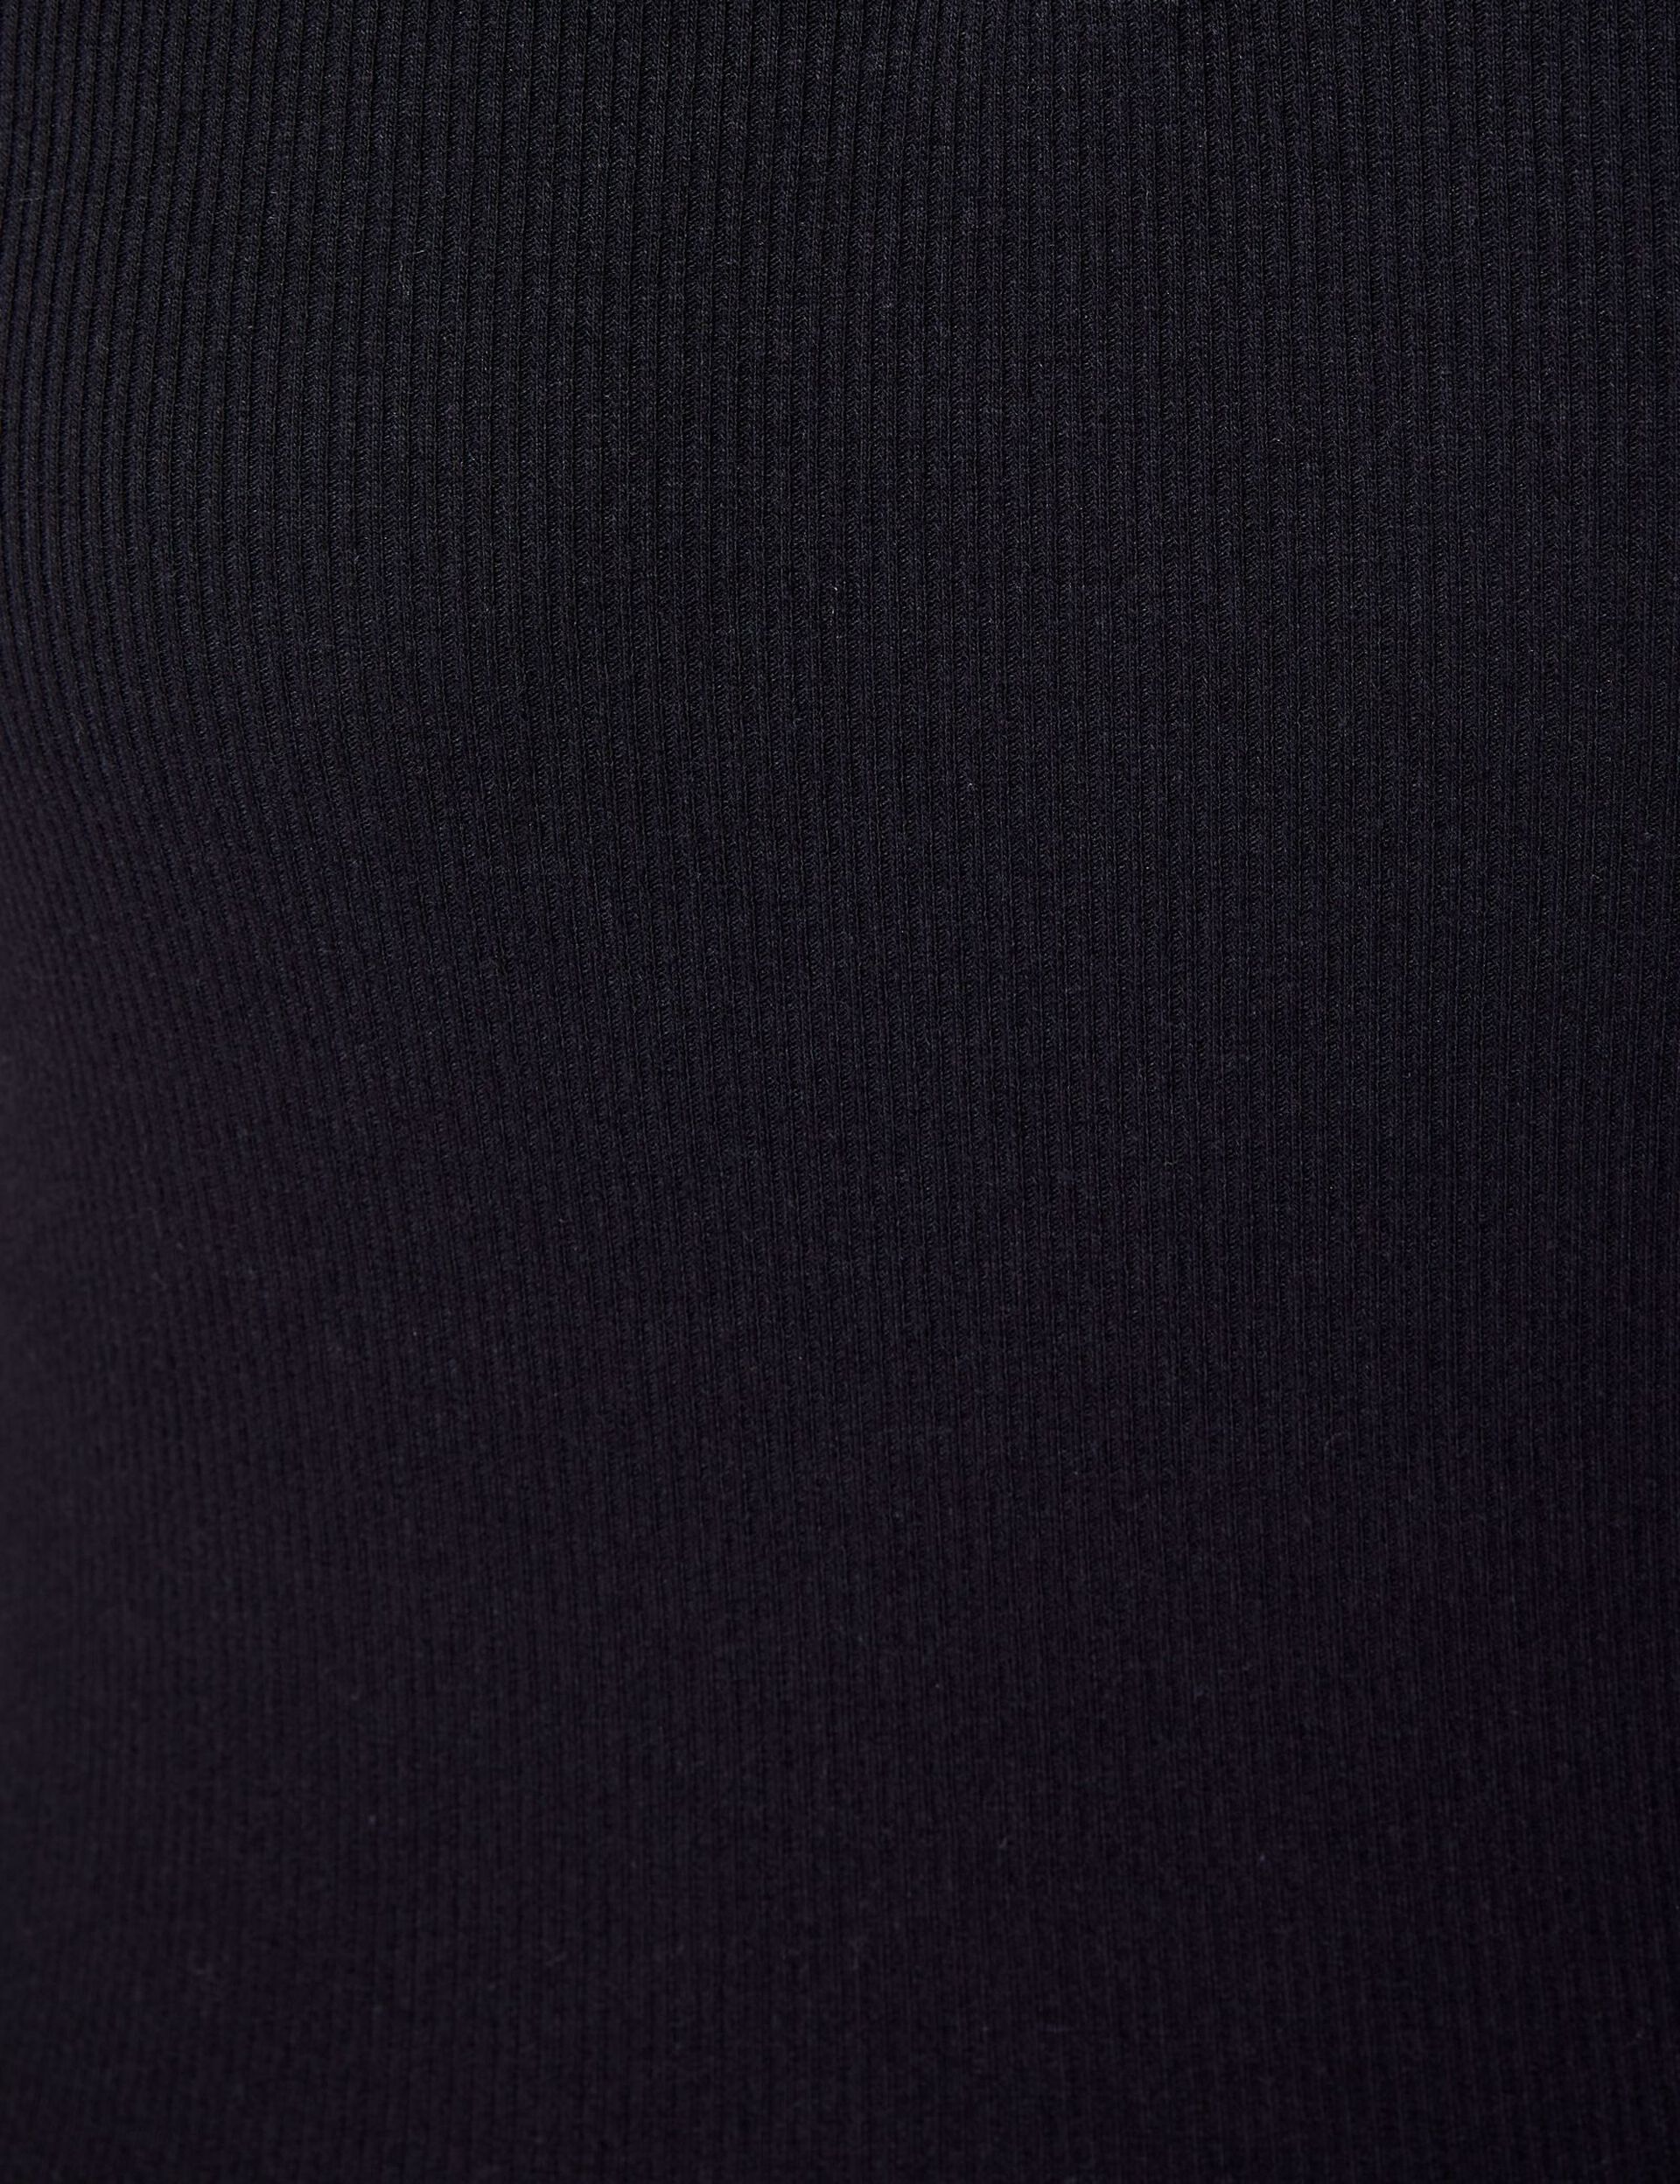 Tee-shirt noir esprit polo